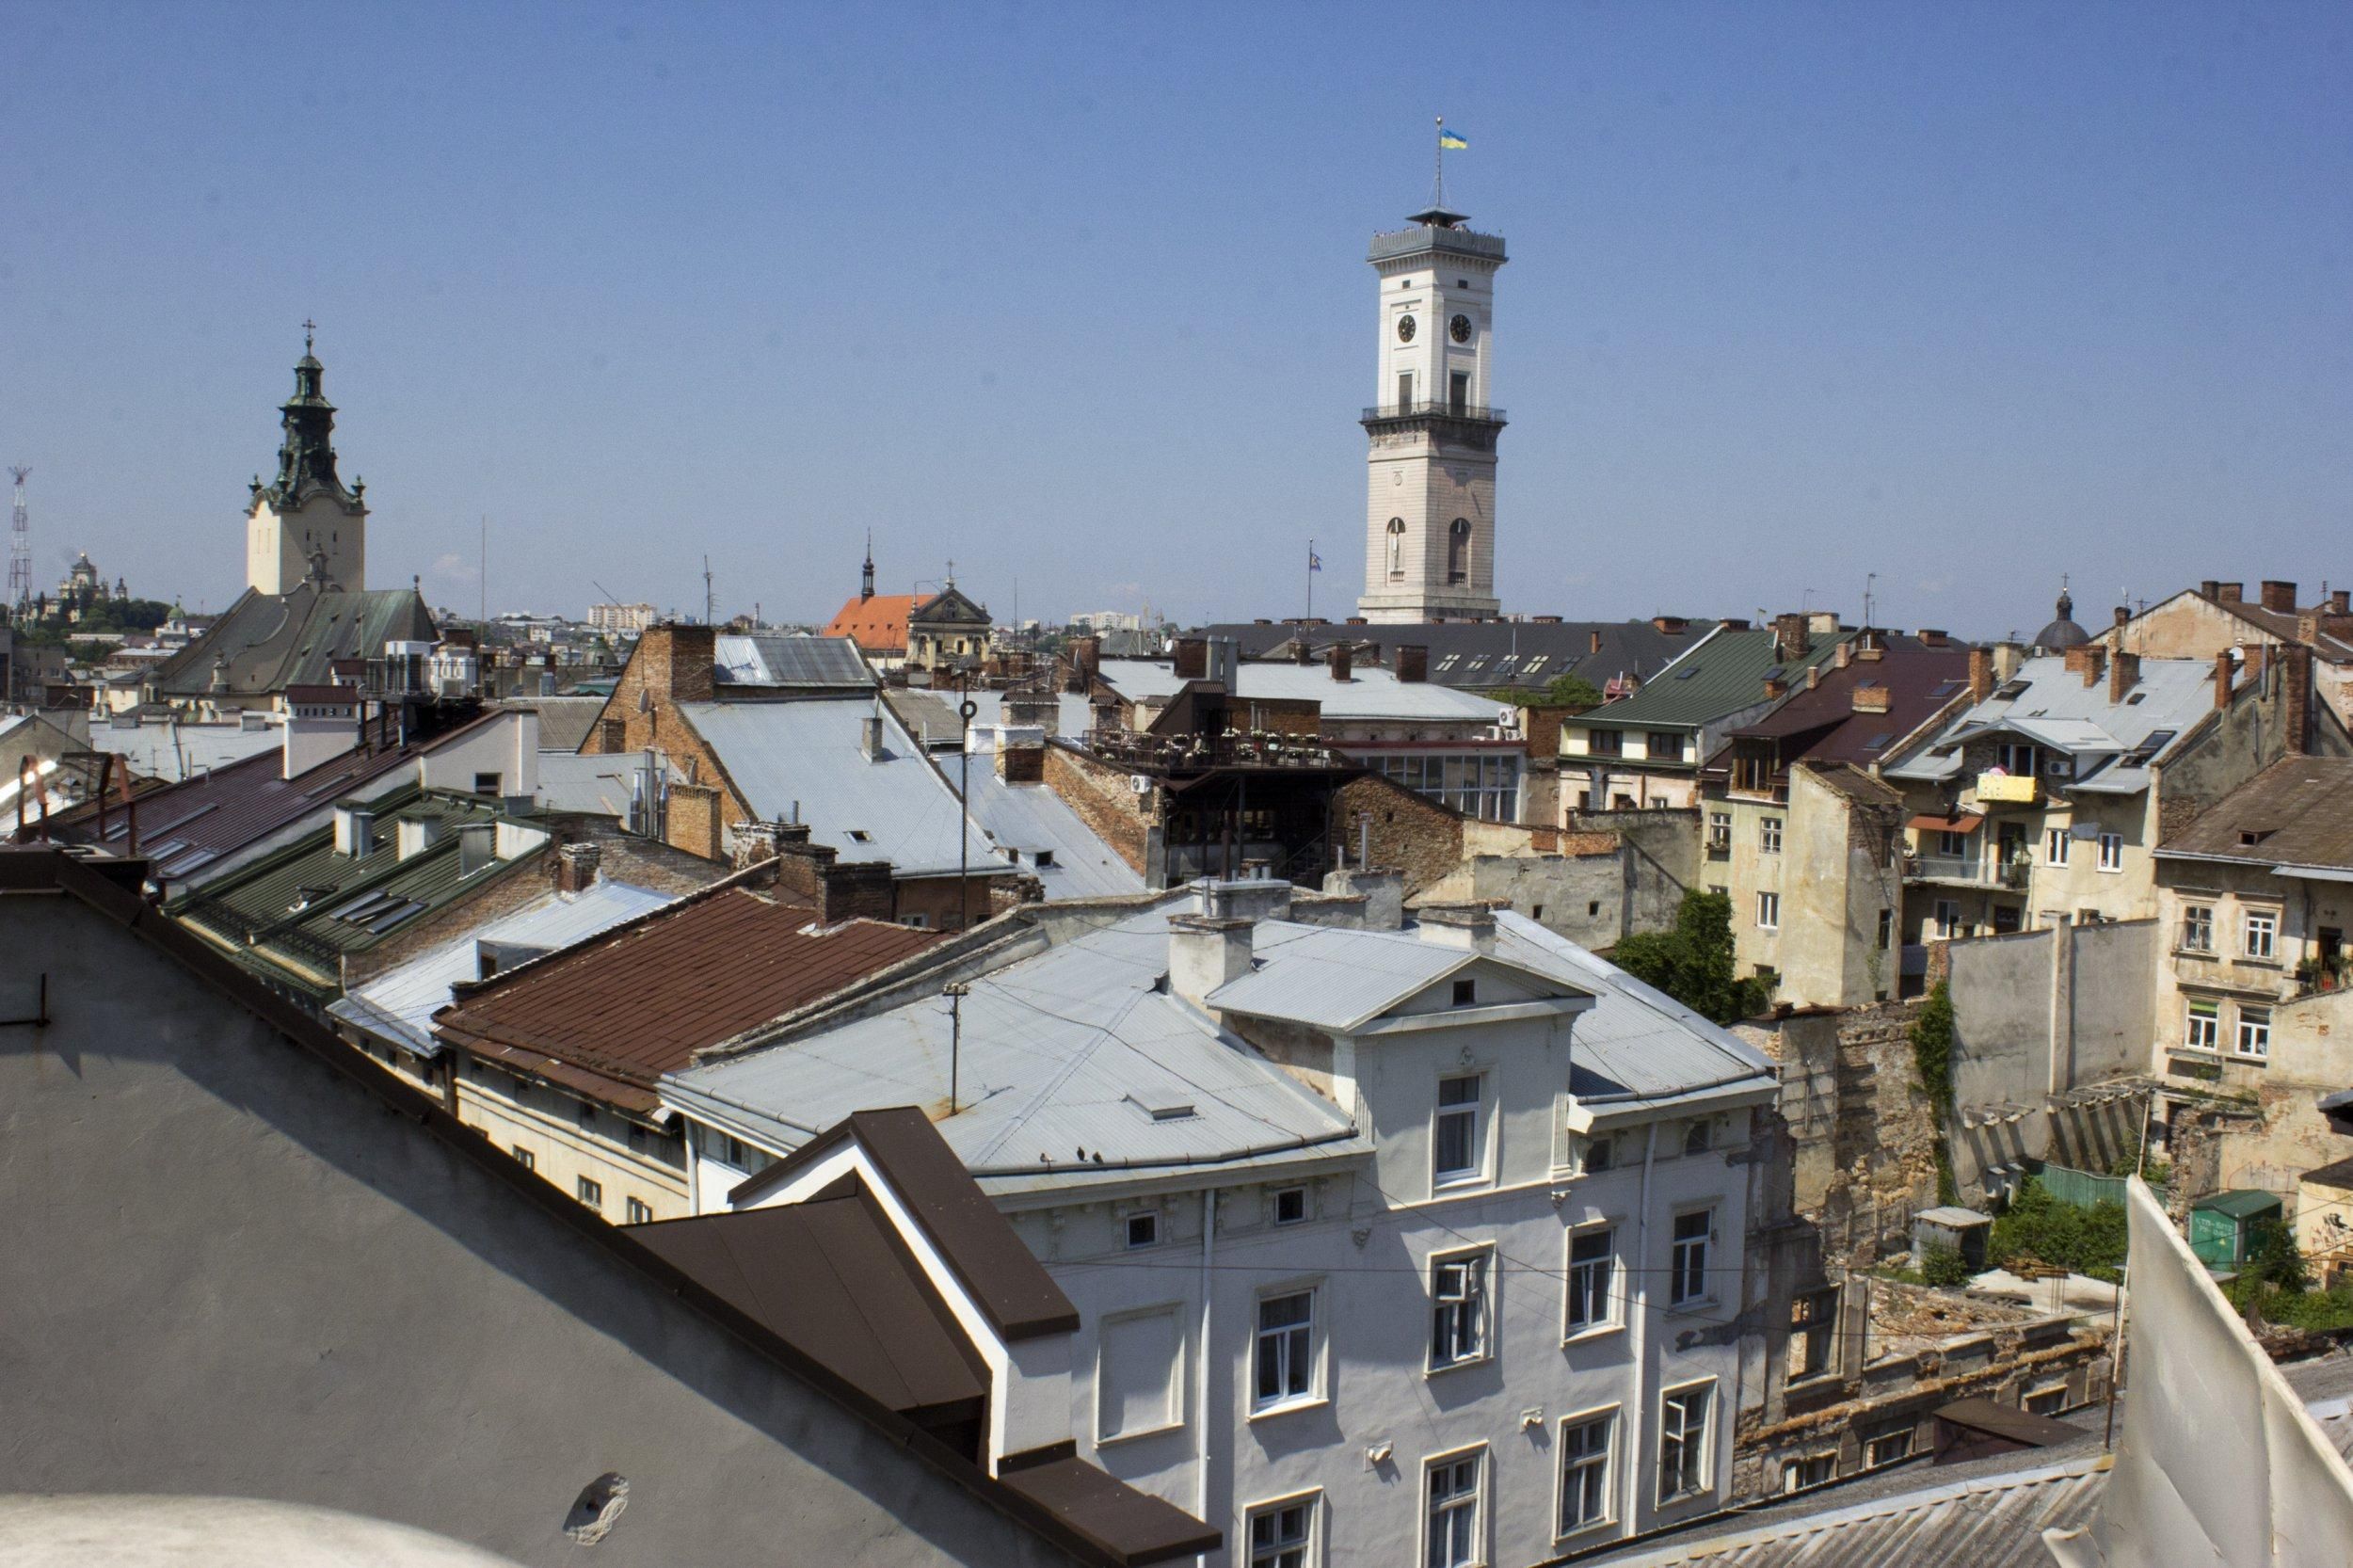 Hilton у Львові: як 72-метровий готель може змінити панораму міста – фото